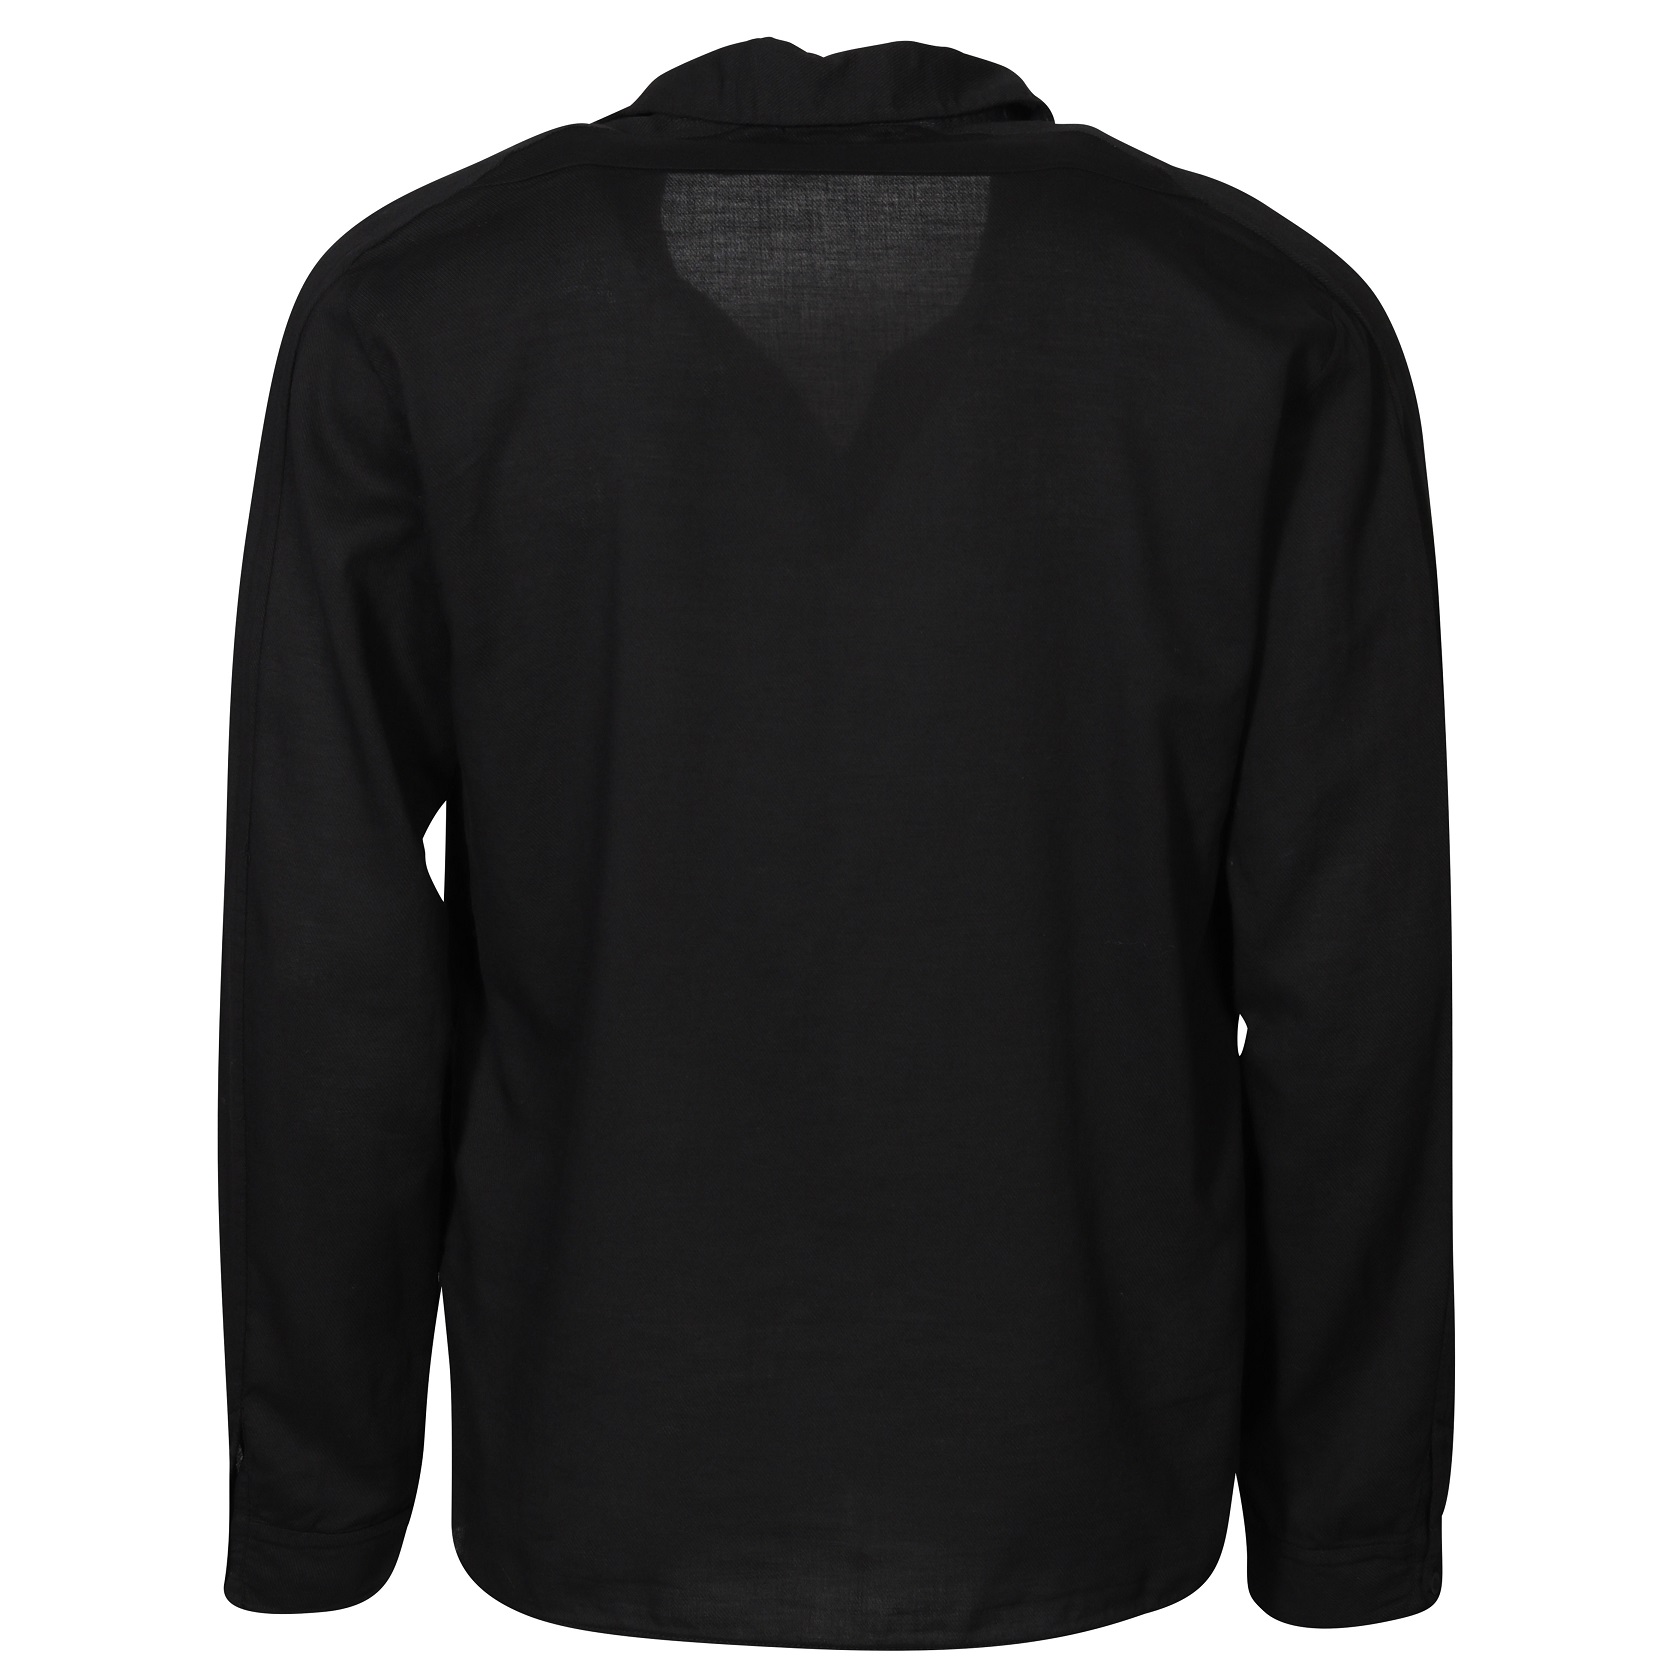 TRANSIT UOMO Super Soft Shirt in Black